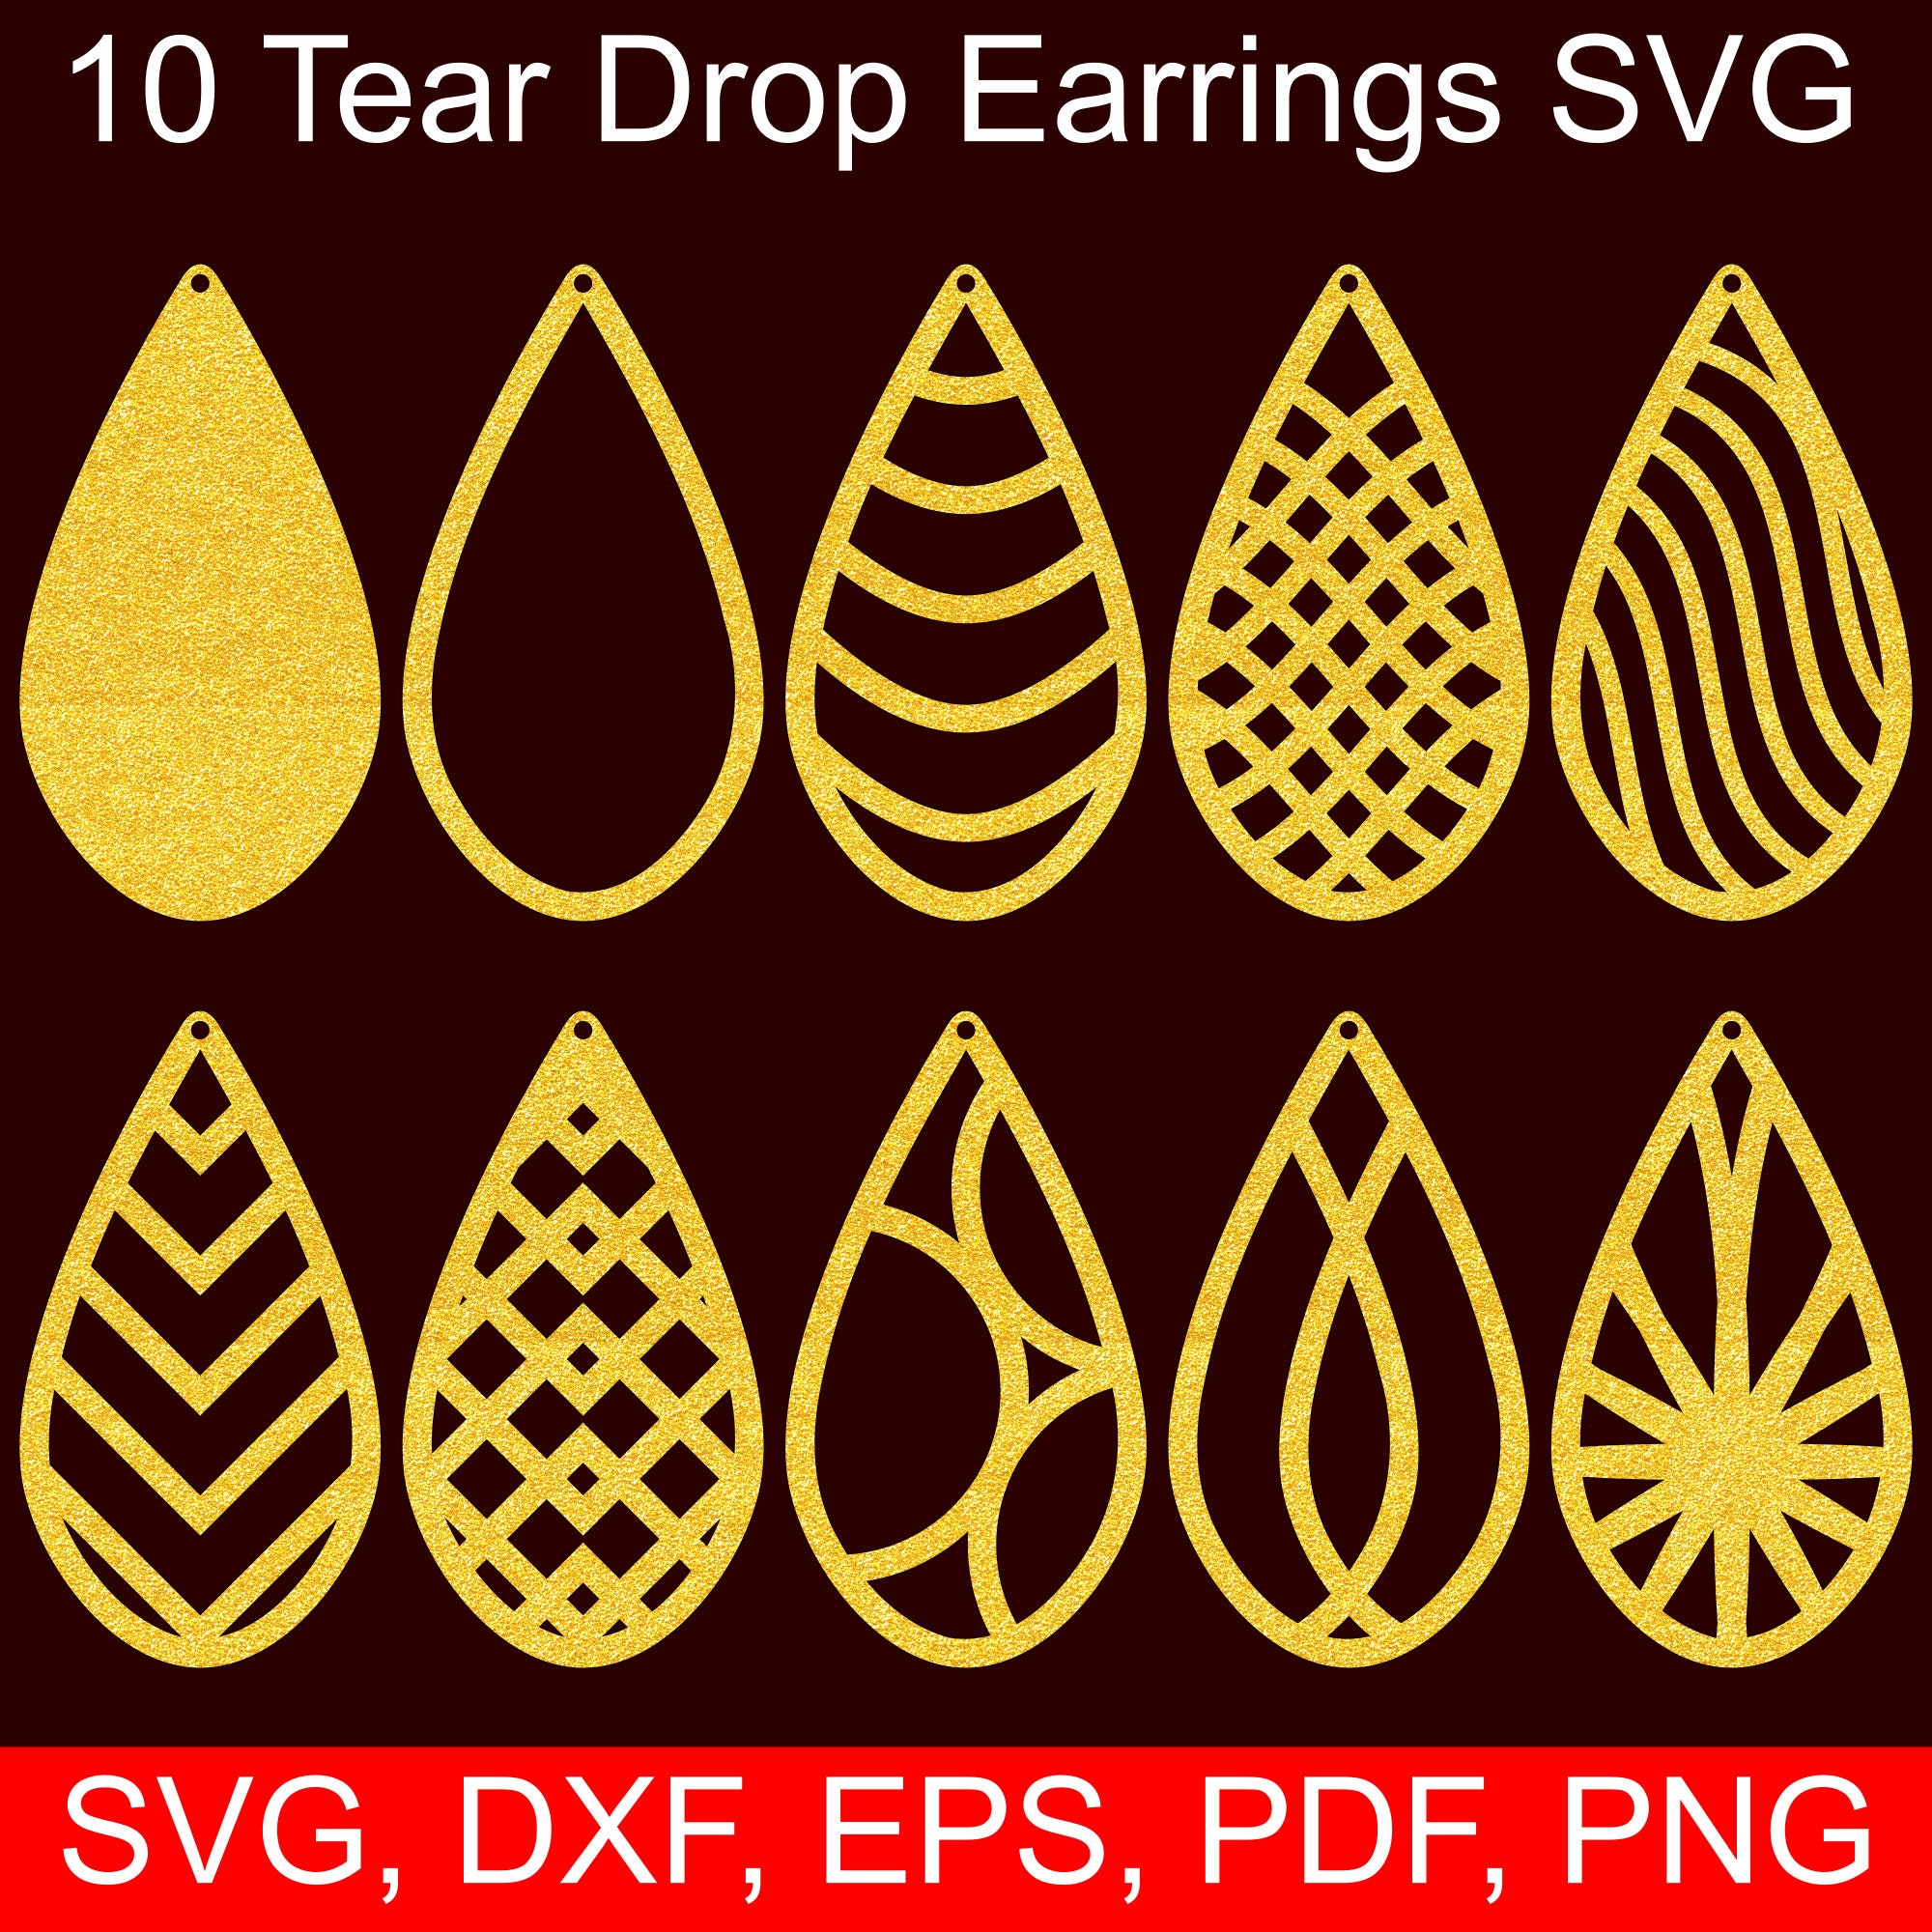 Free Svg Earring Digital Designs Svg File For Cricut Earrings